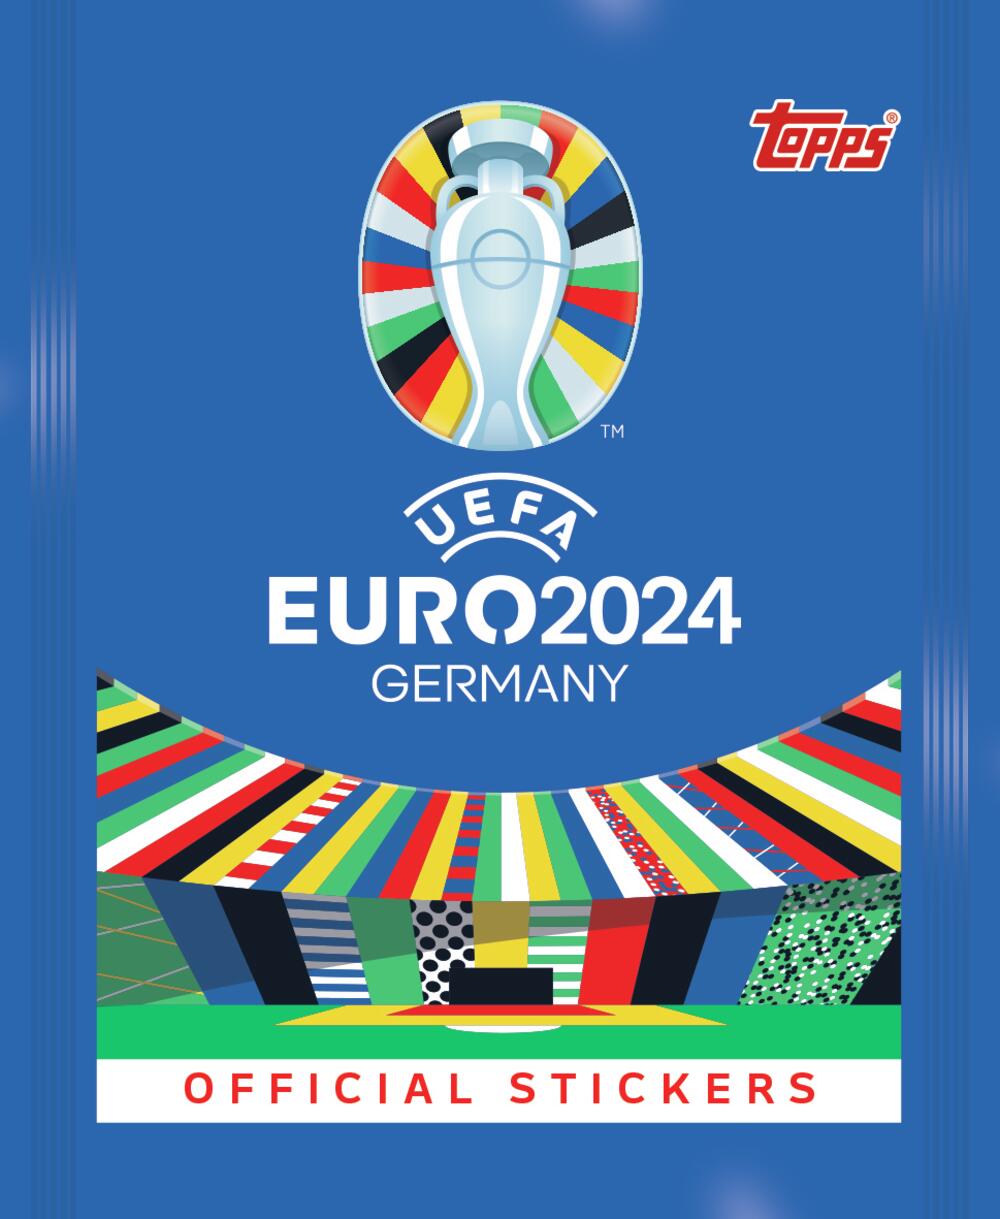 Kurir, UEFA EURO 2024 album, album